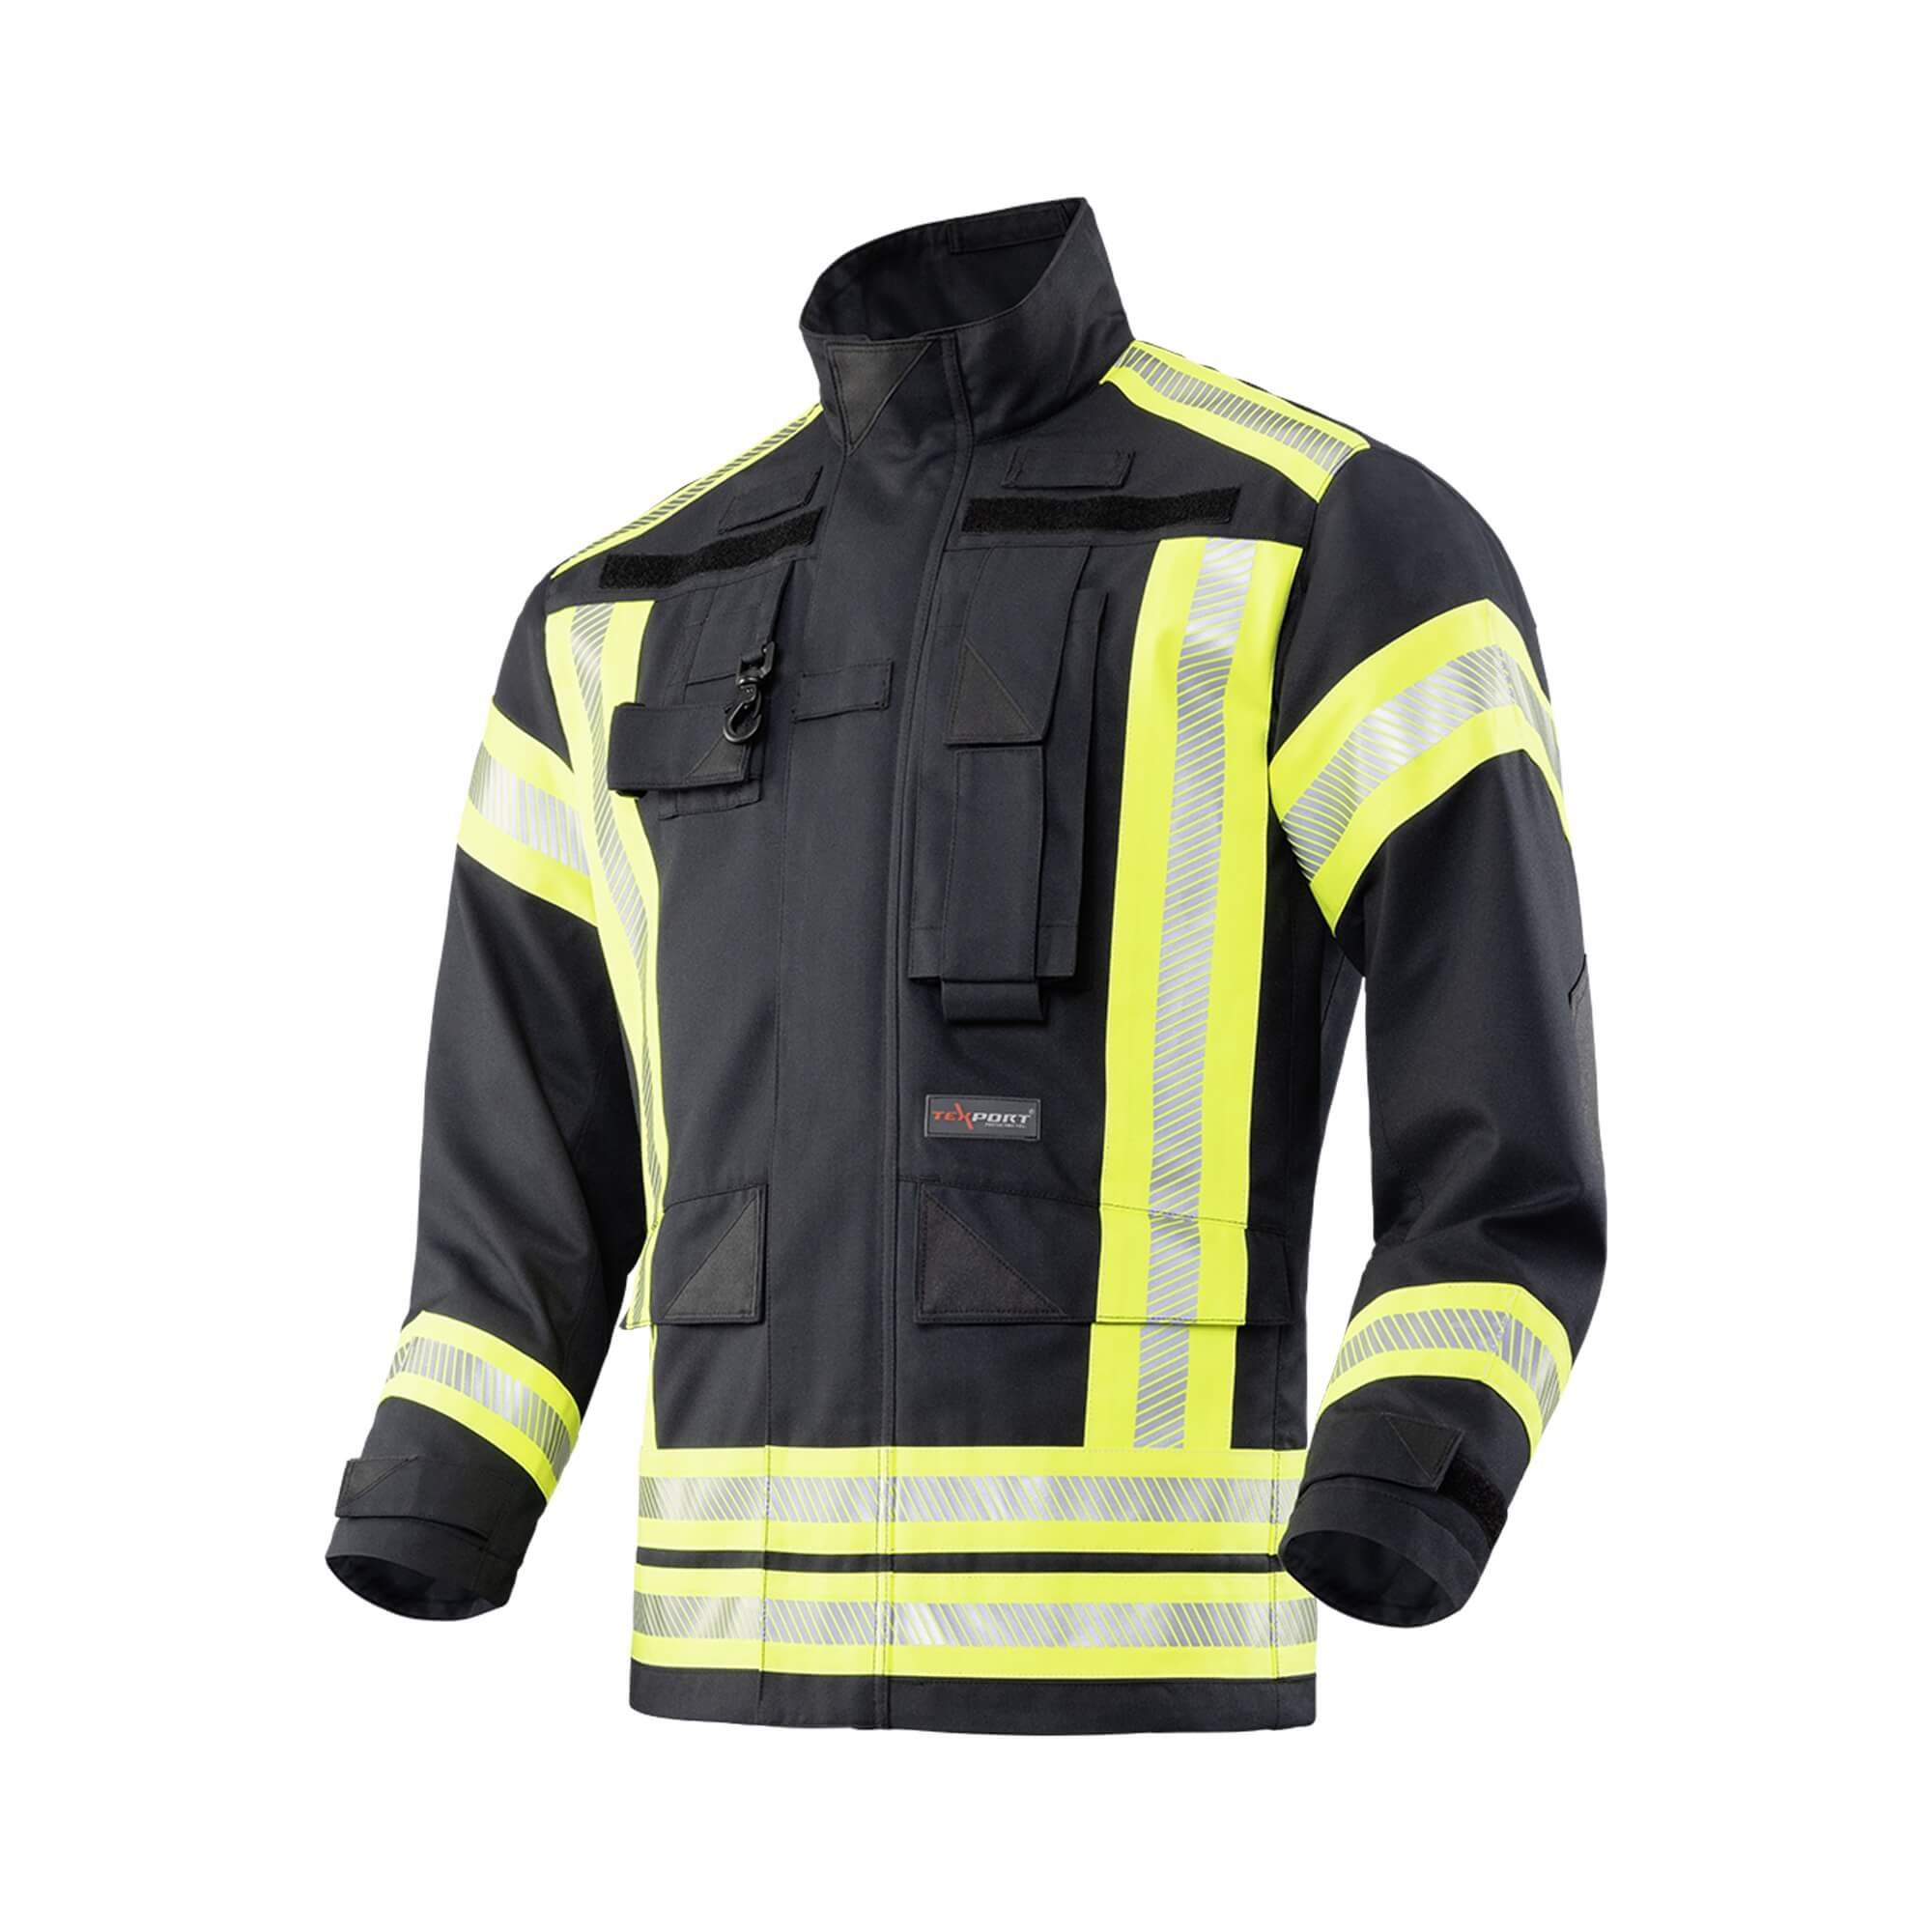 Intervencijsko vatrogasno odijelo Texport Fire Inforcer